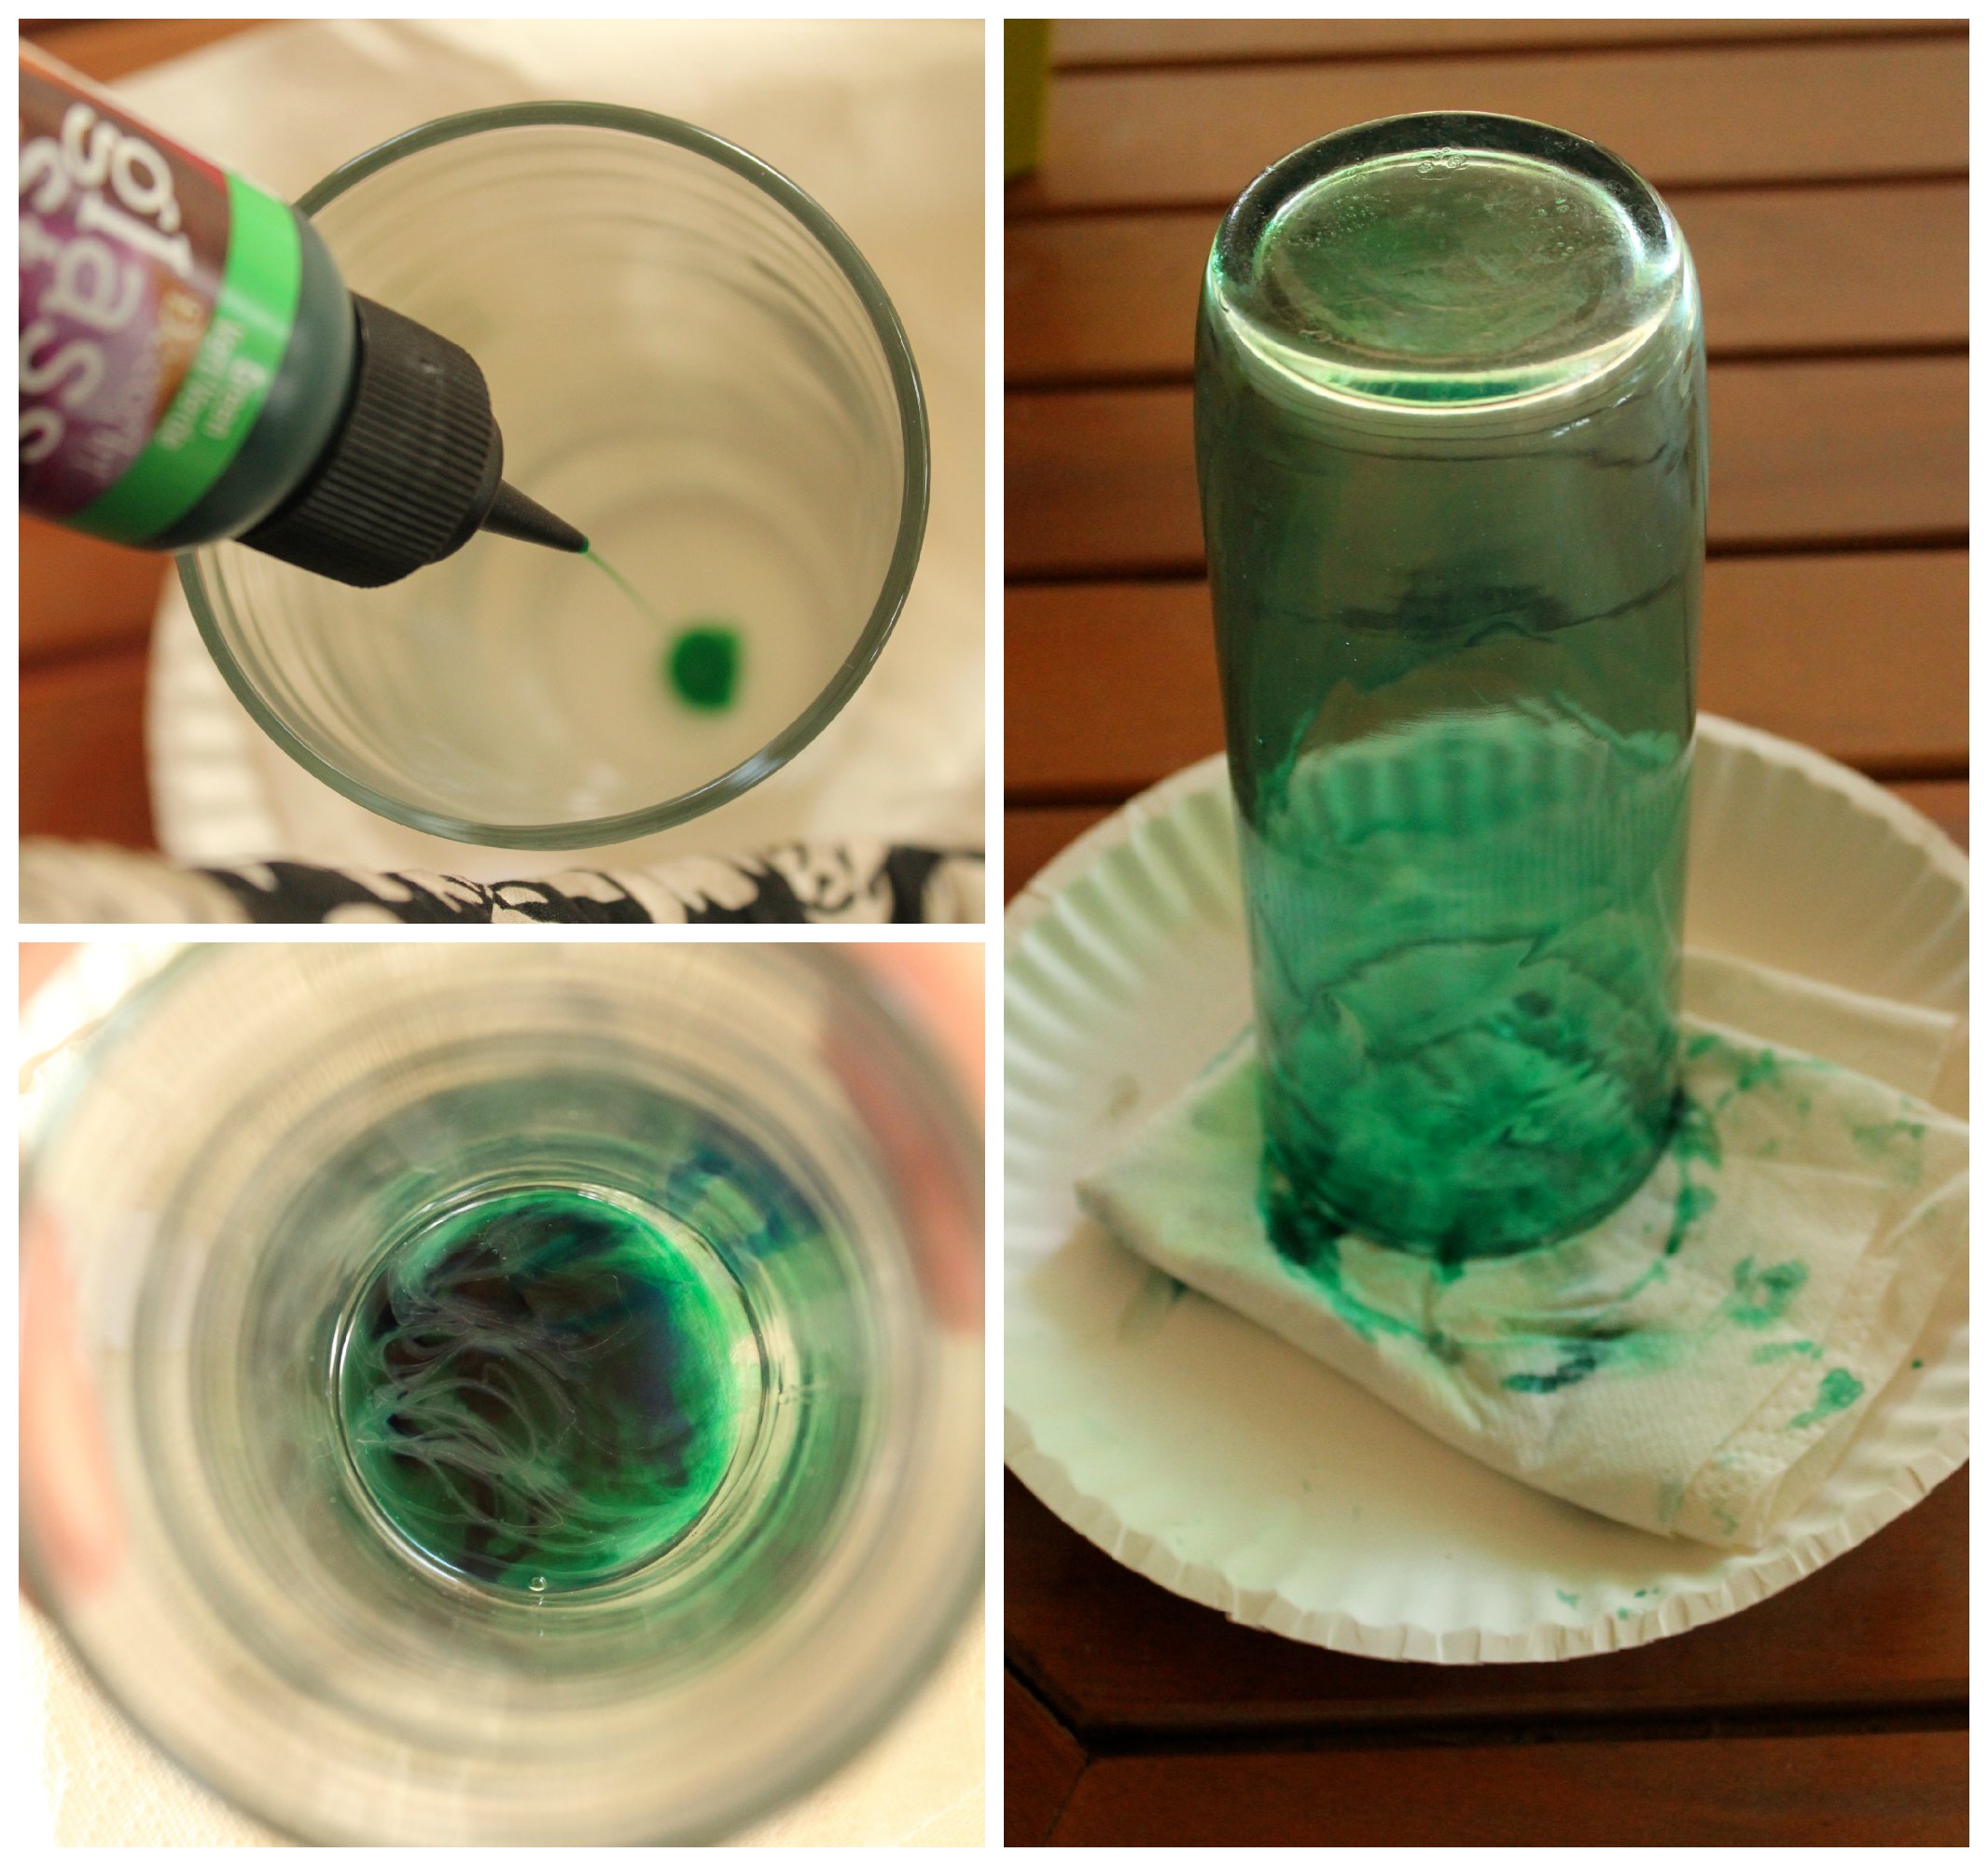 Using DecoArt glass stain